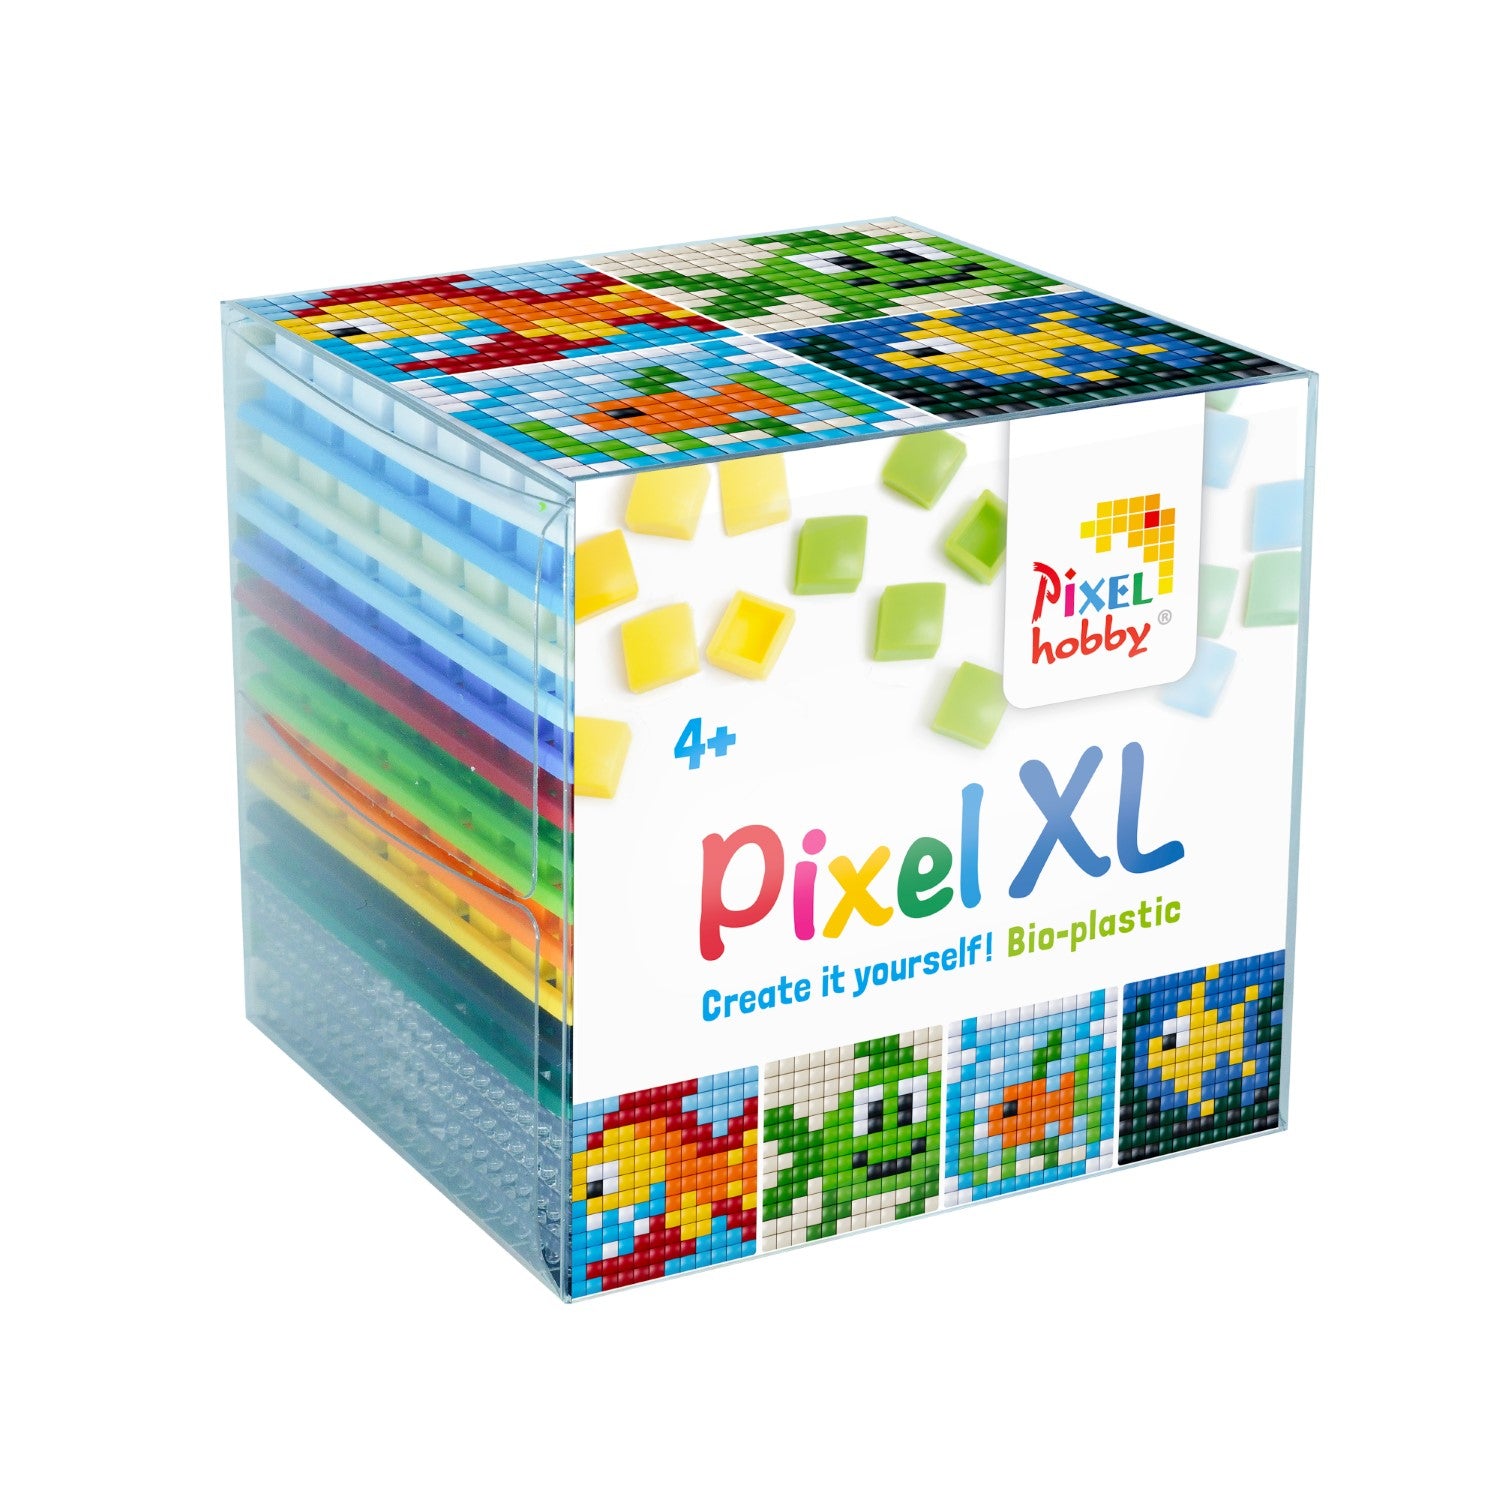 Pixelhobby XL Cube - Fish